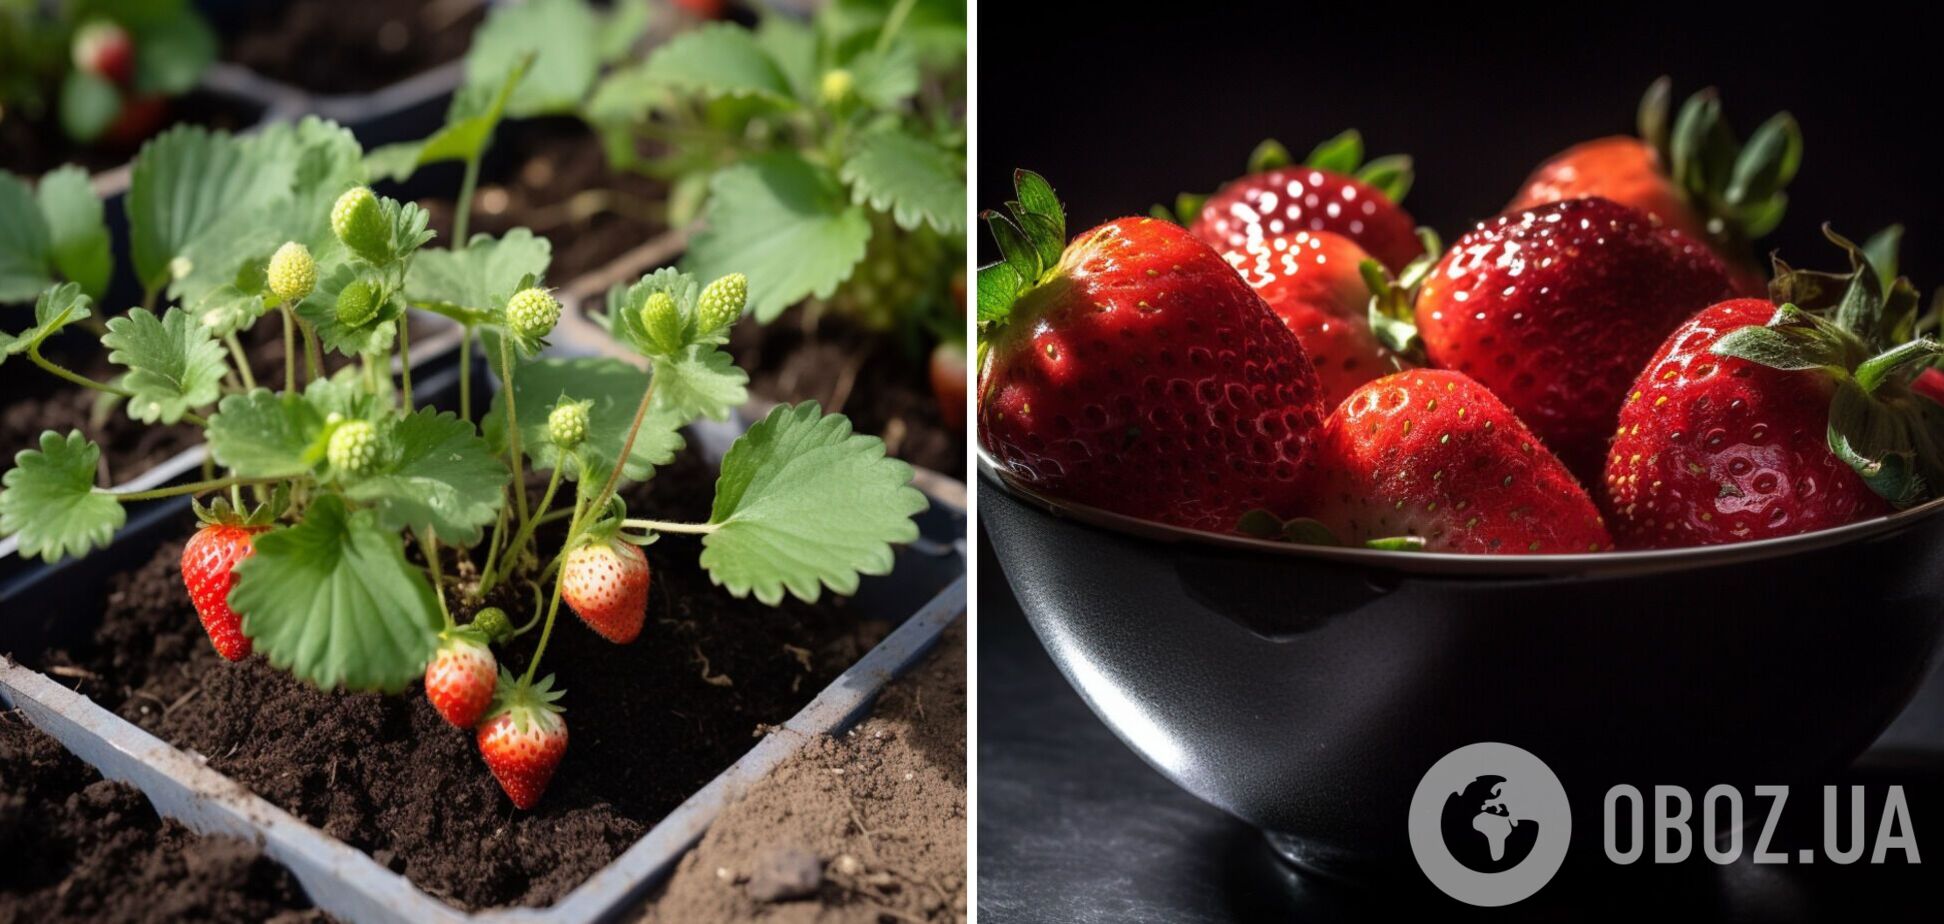 Як саджати полуницю, щоб ягоди були великі і солодкі: поради